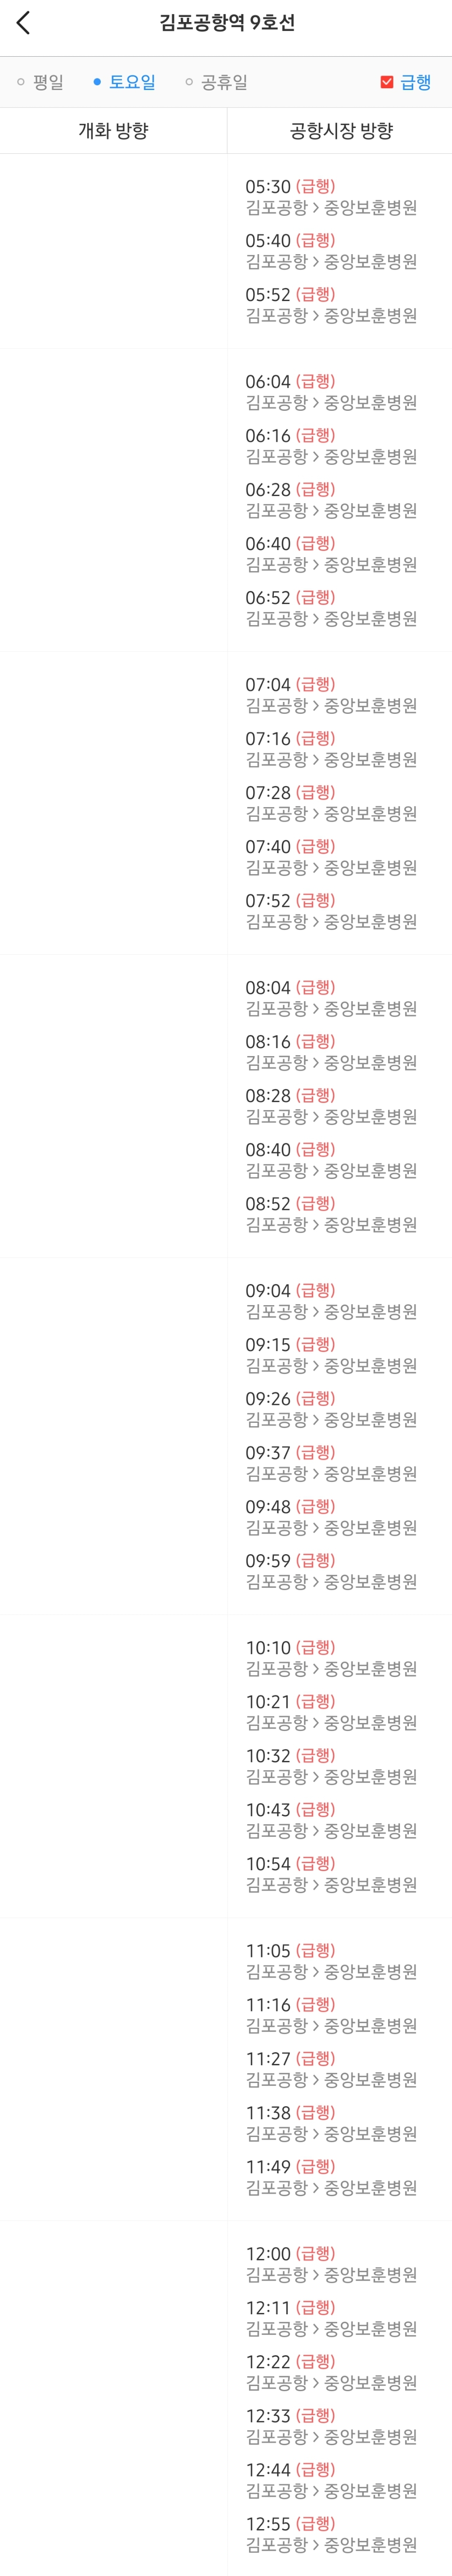 김포공항역 토요일 오전 9호선 급행열차 시간표